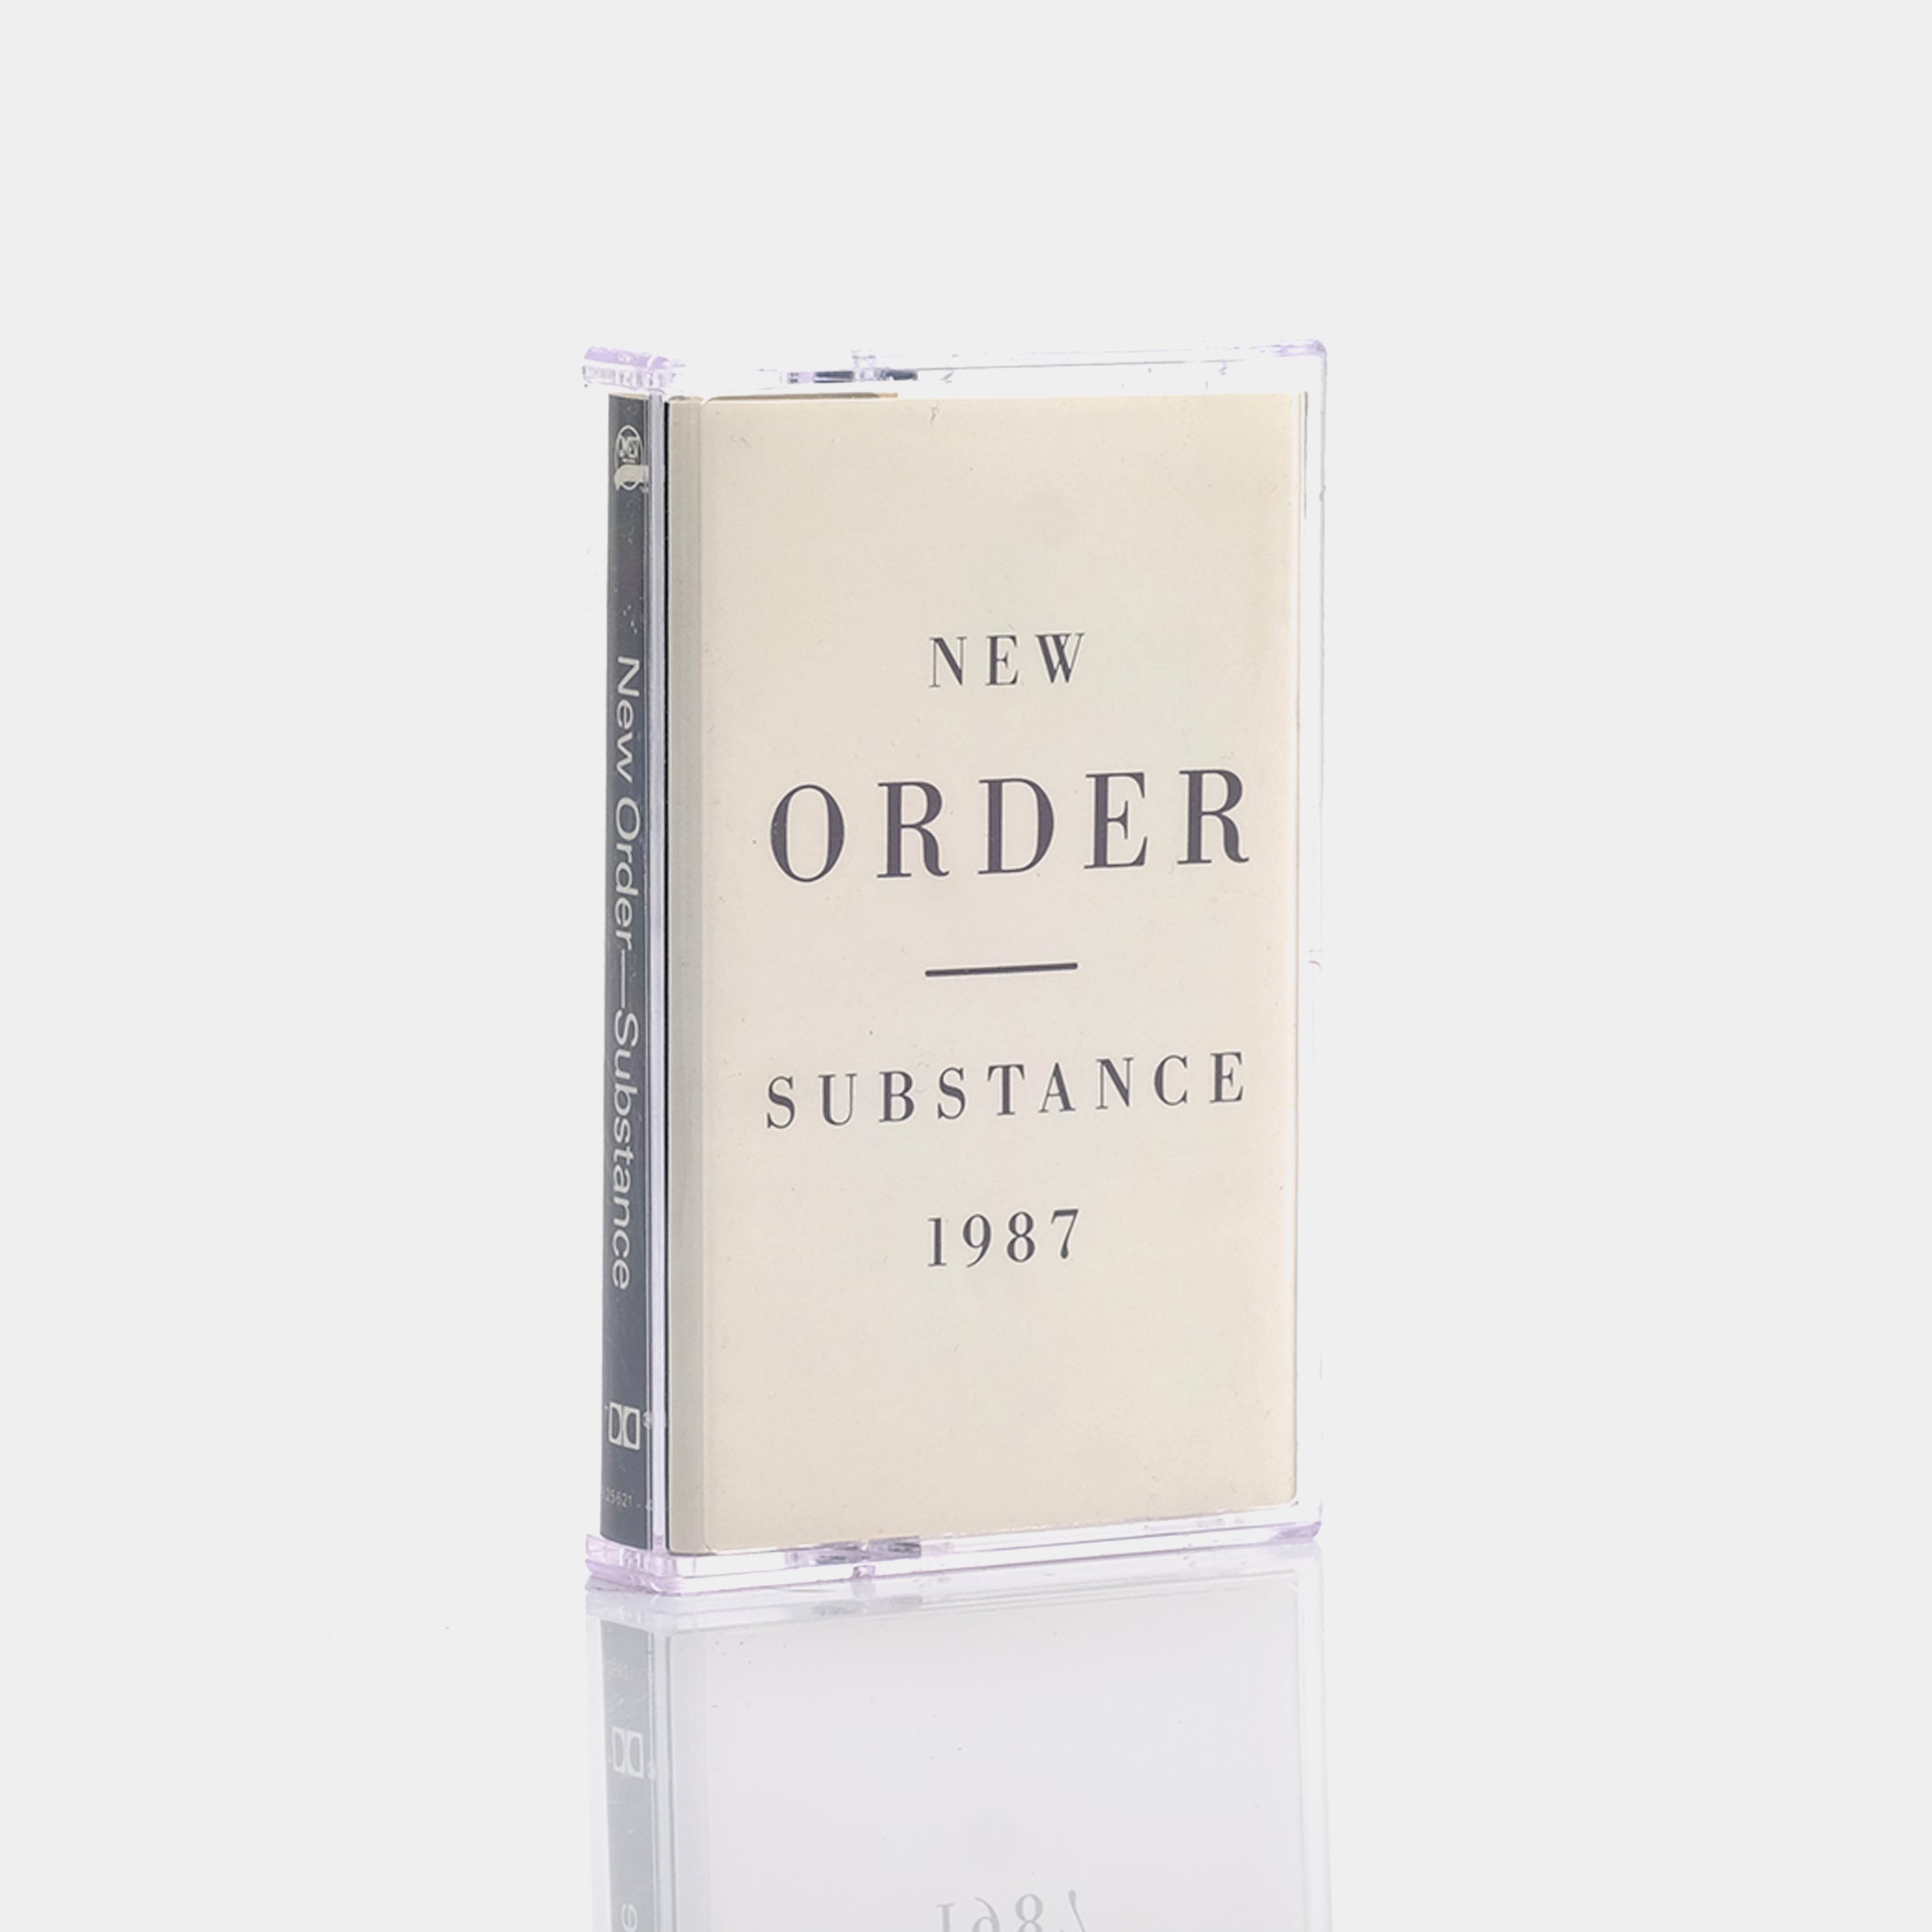 New Order - Substance Cassette Tape